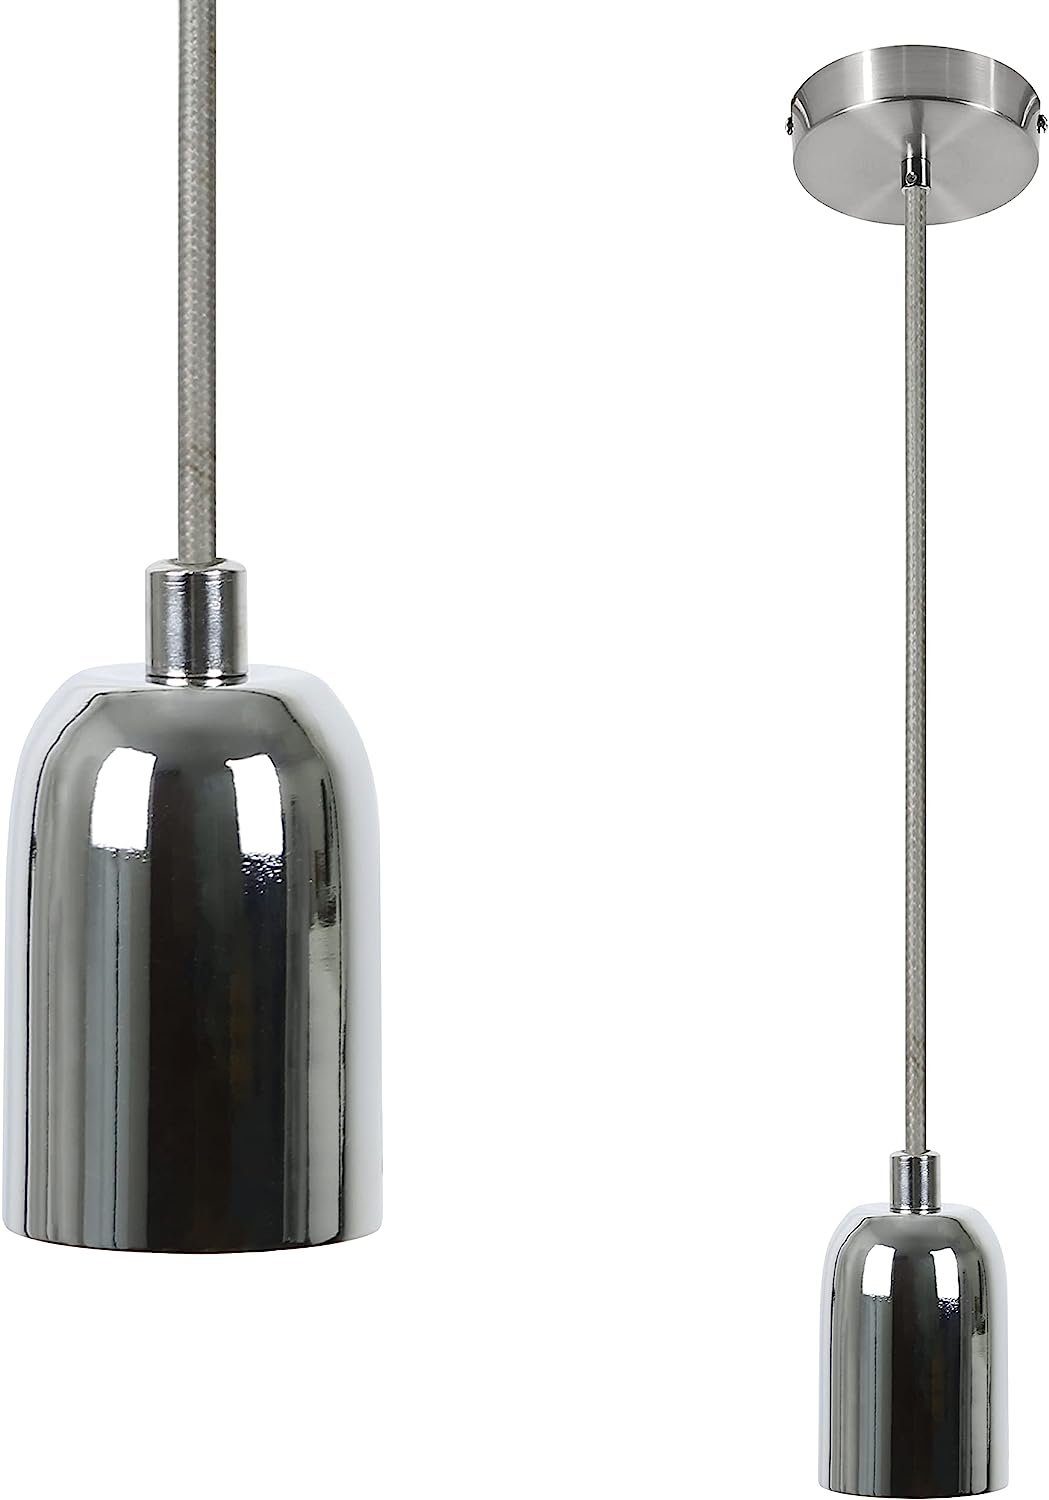 Nettlife Lampenfassung E27 Vintage Hängefassung Silber mit Schnurpendel 1.3M Kabel Edison